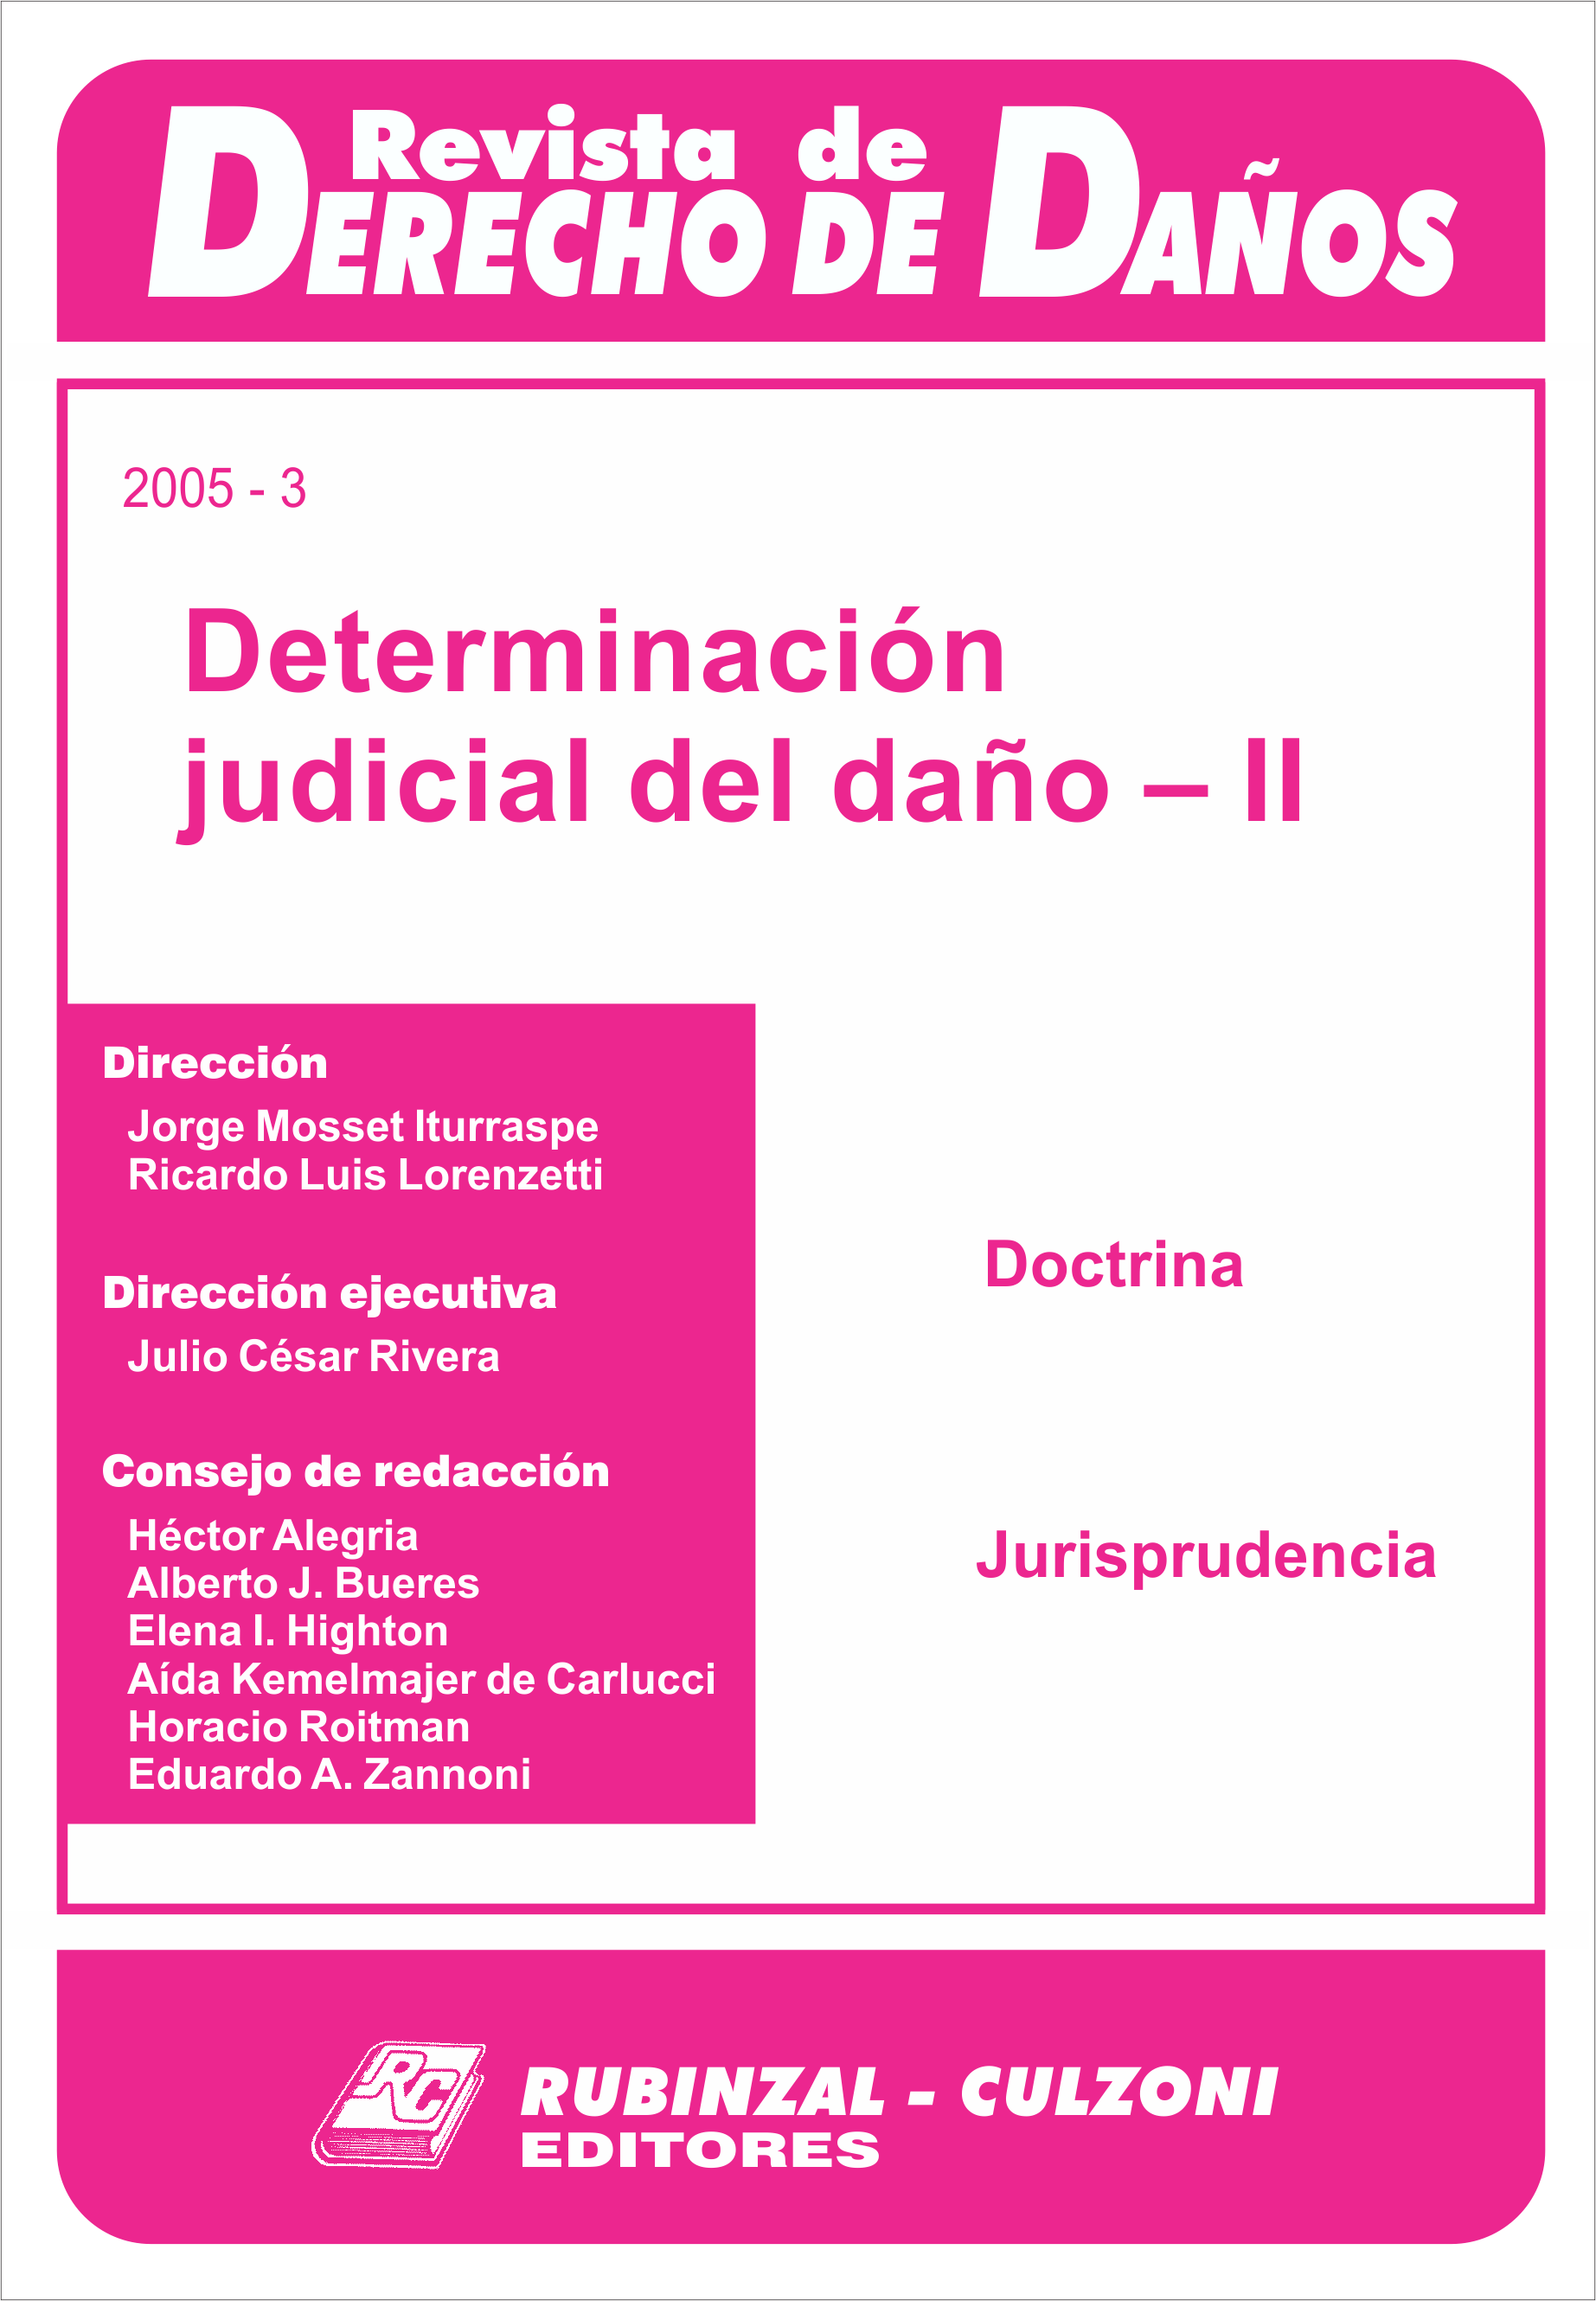 Determinación judicial del daño - II. [2005-3]